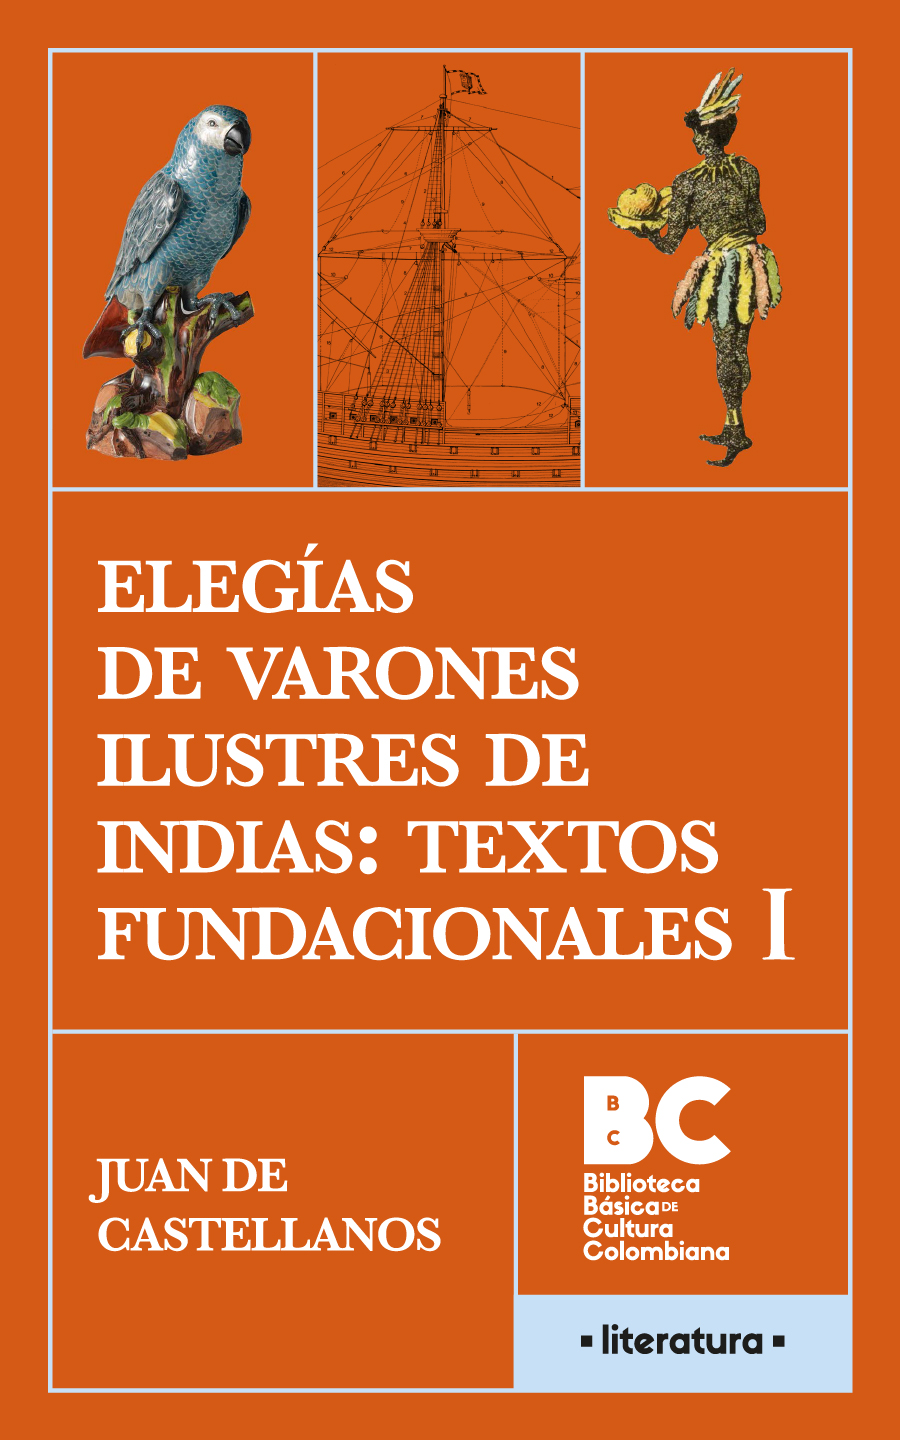 Catalogación en la publicación Biblioteca Nacional de Colombia Castellanos - photo 1